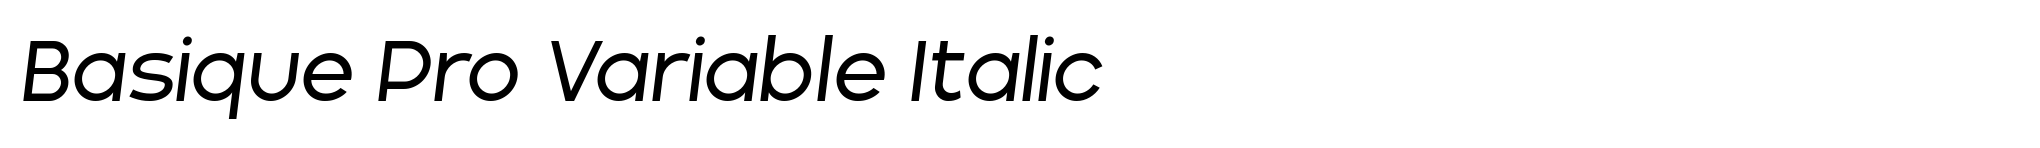 Basique Pro Variable Italic image